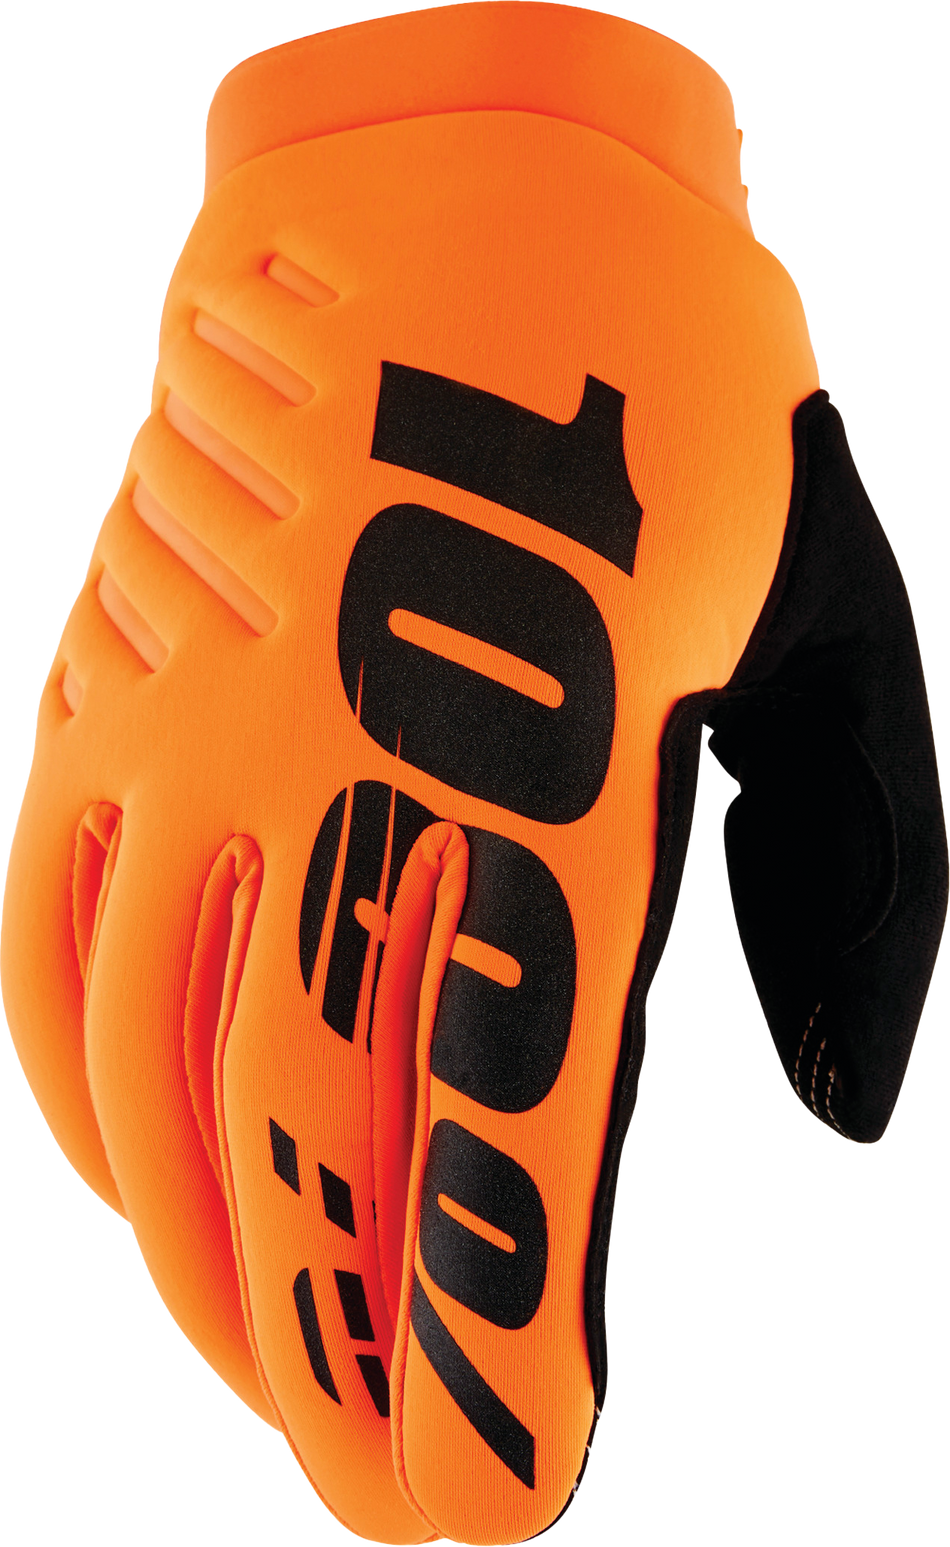 100% Brisker Youth Gloves Fluo Orange/Black Lg 10004-00006